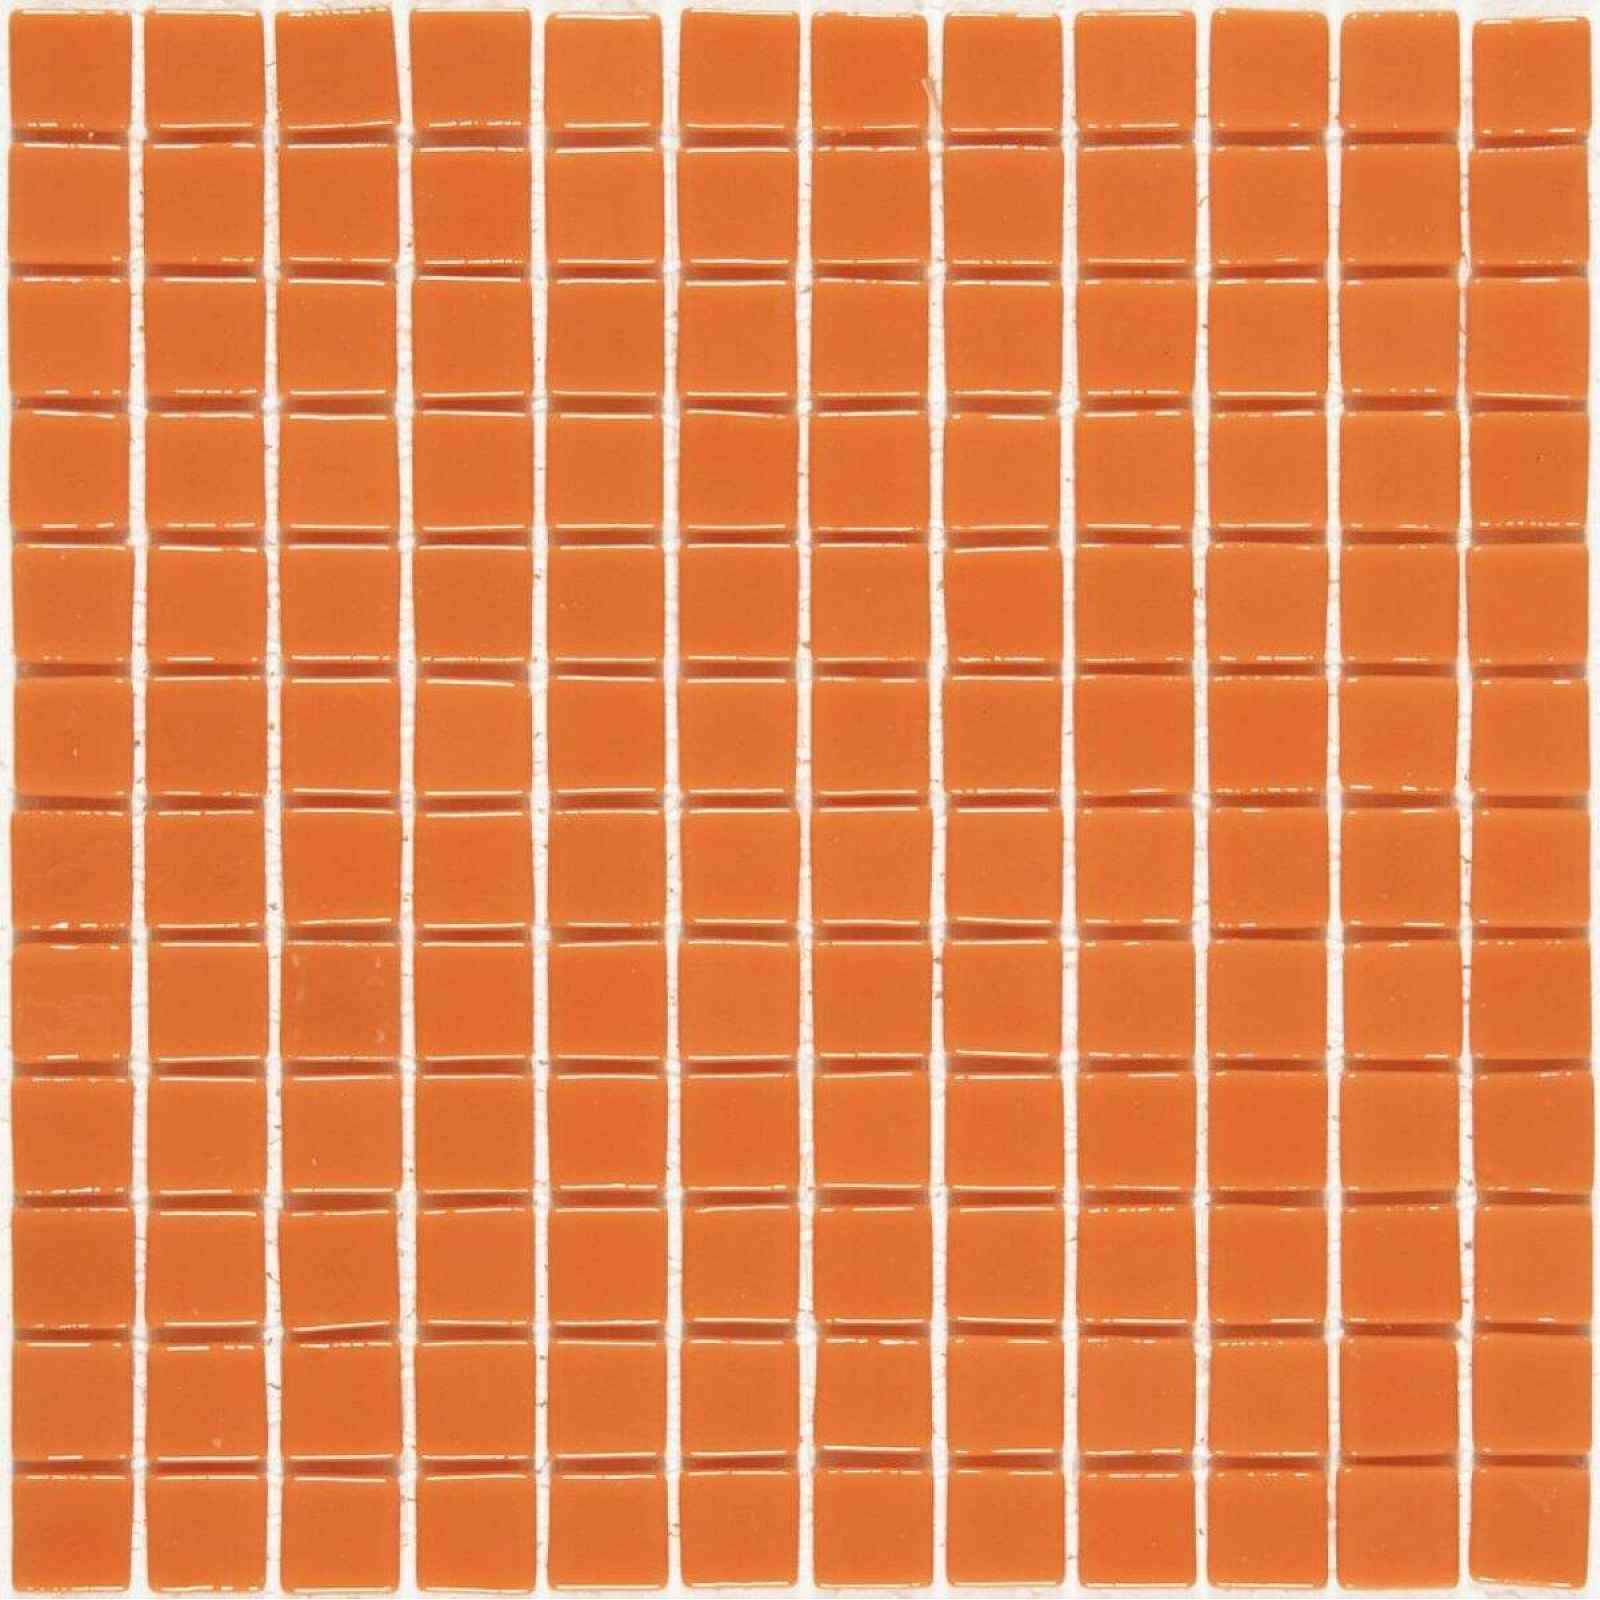 Skleněná mozaika Monocolores naranja 30x30 cm lesk MC702